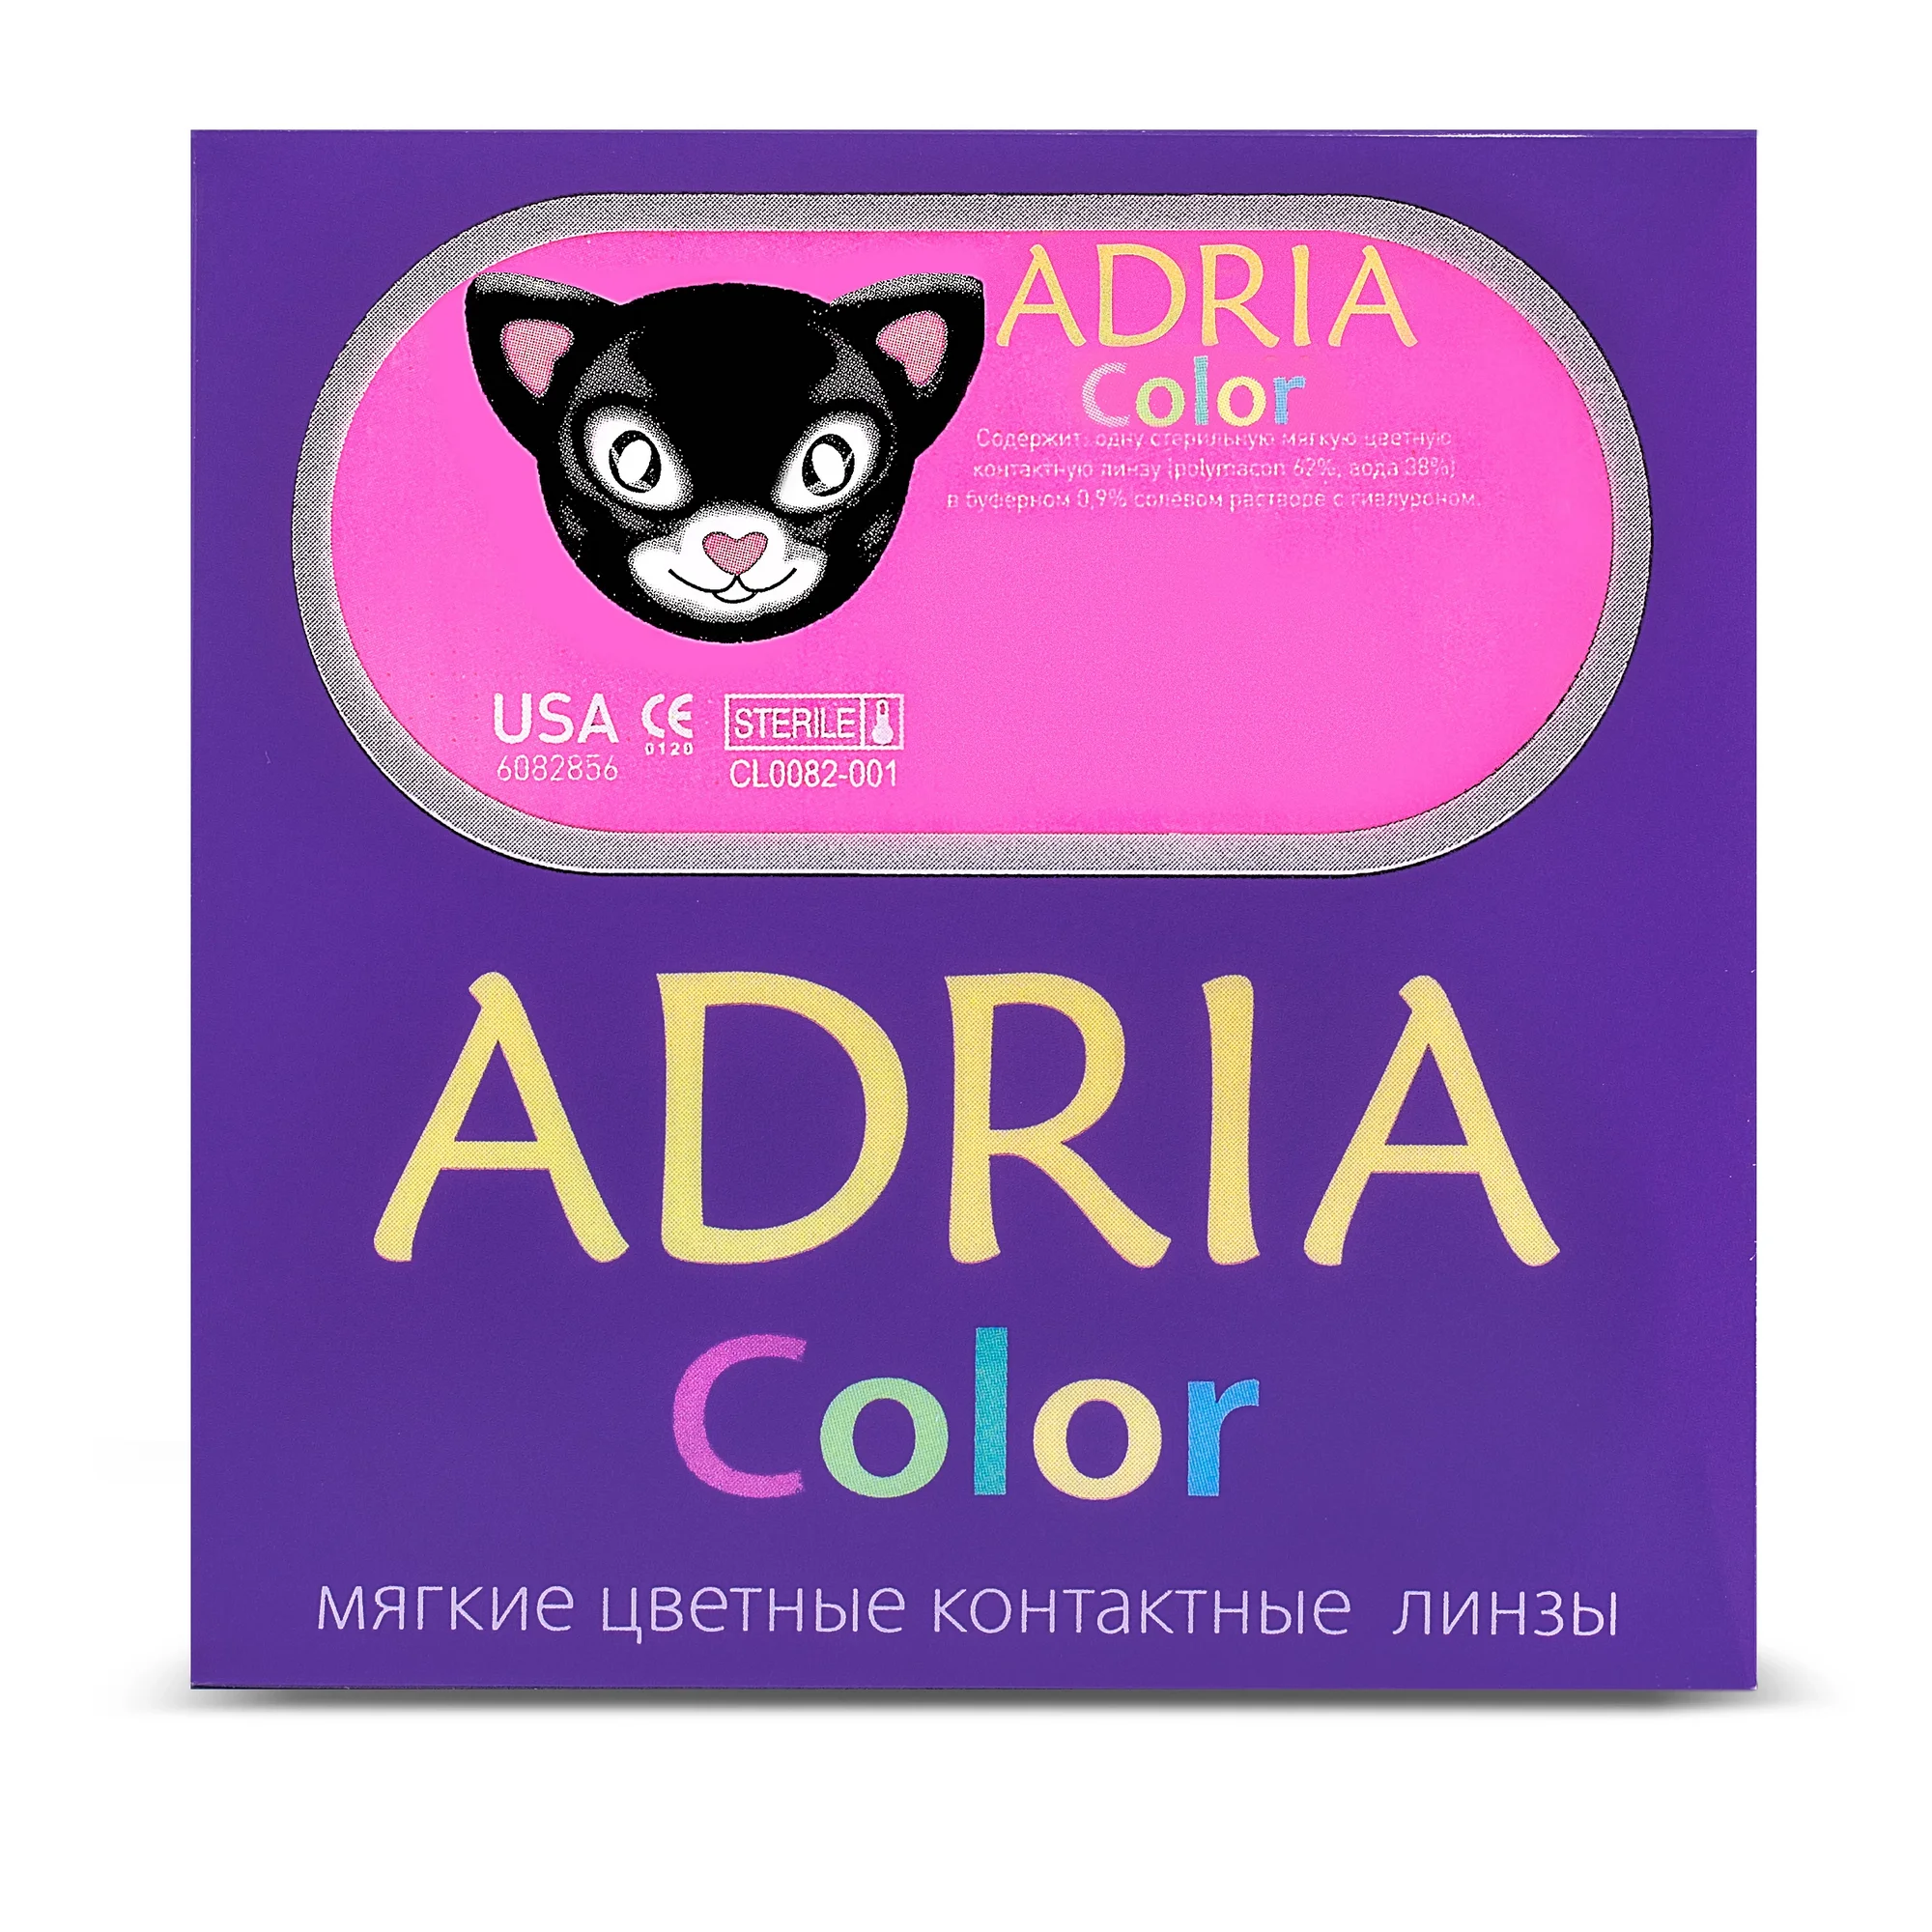 COLOR BOX ADRIA Color 3 Tone Hazel (светло-карий)